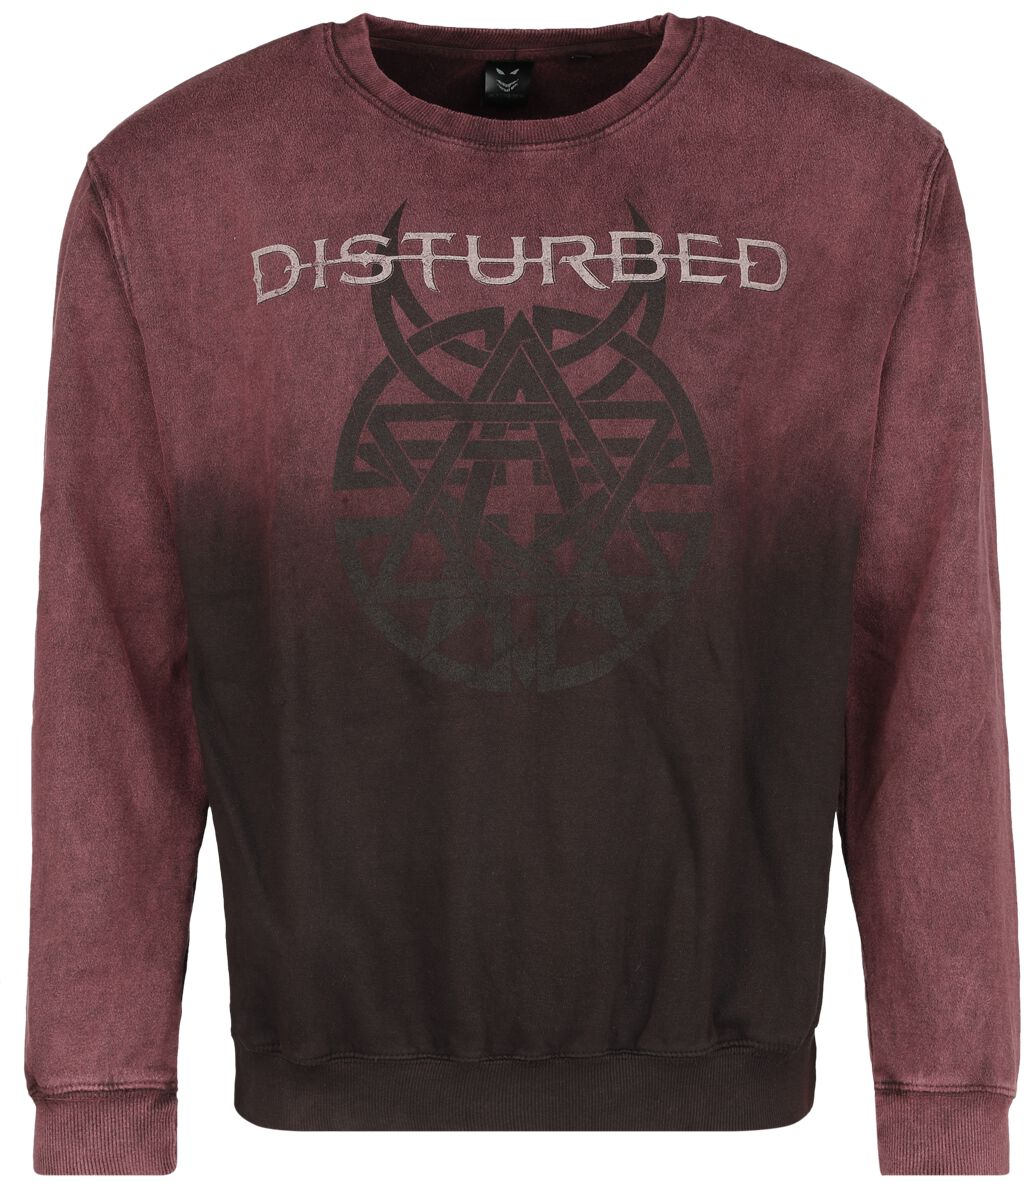 Disturbed Believe Symbol Sweatshirt dunkelrot in S von Disturbed